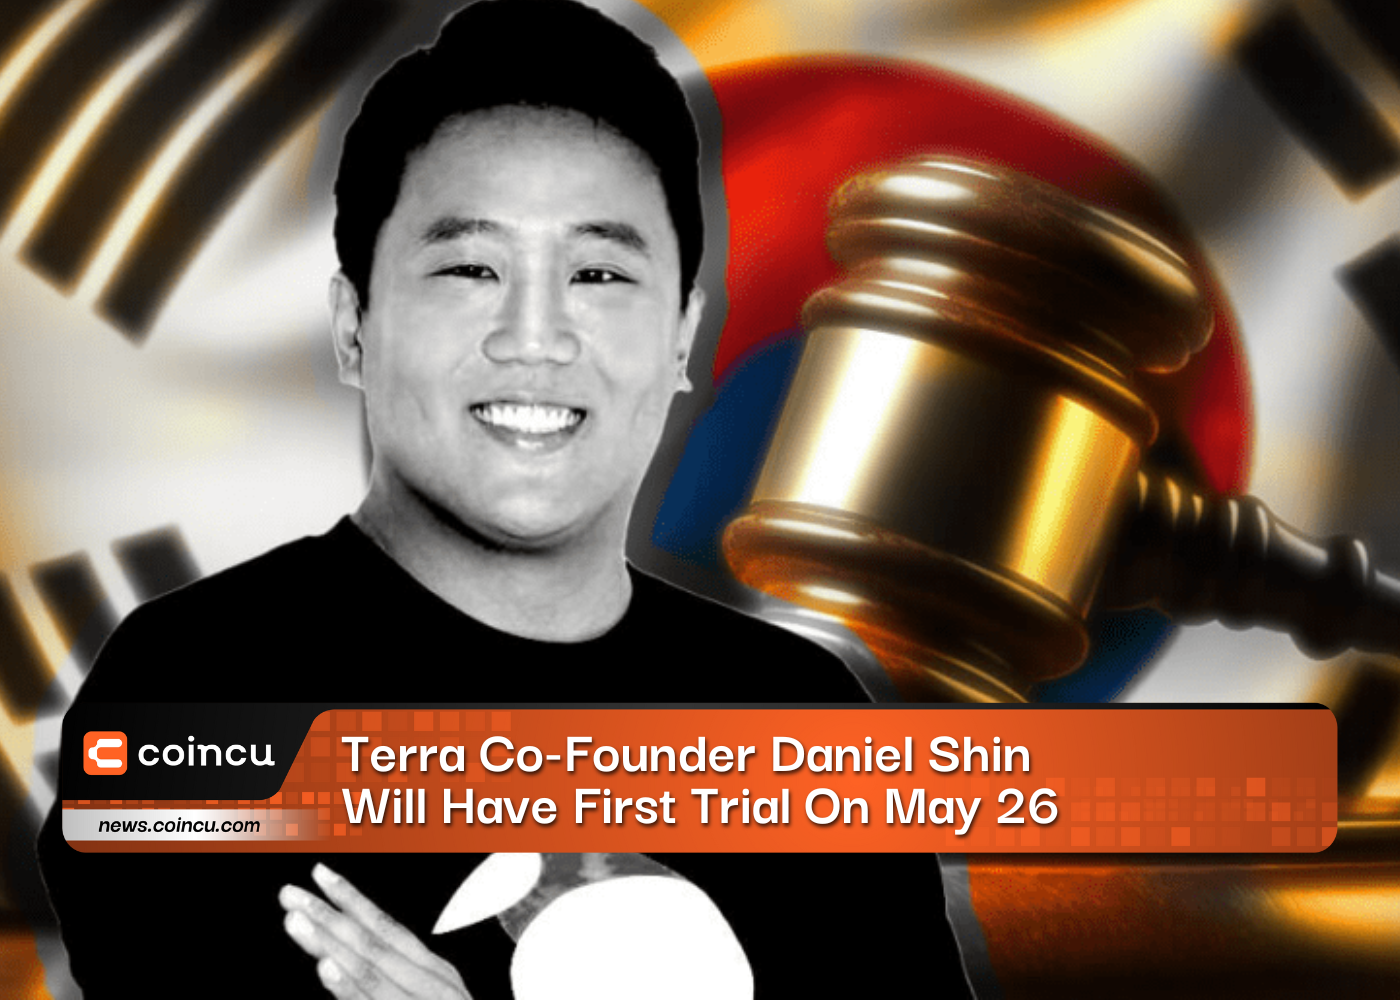 El cofundador de Terra, Daniel Shin, tendrá su primera prueba el 26 de mayo